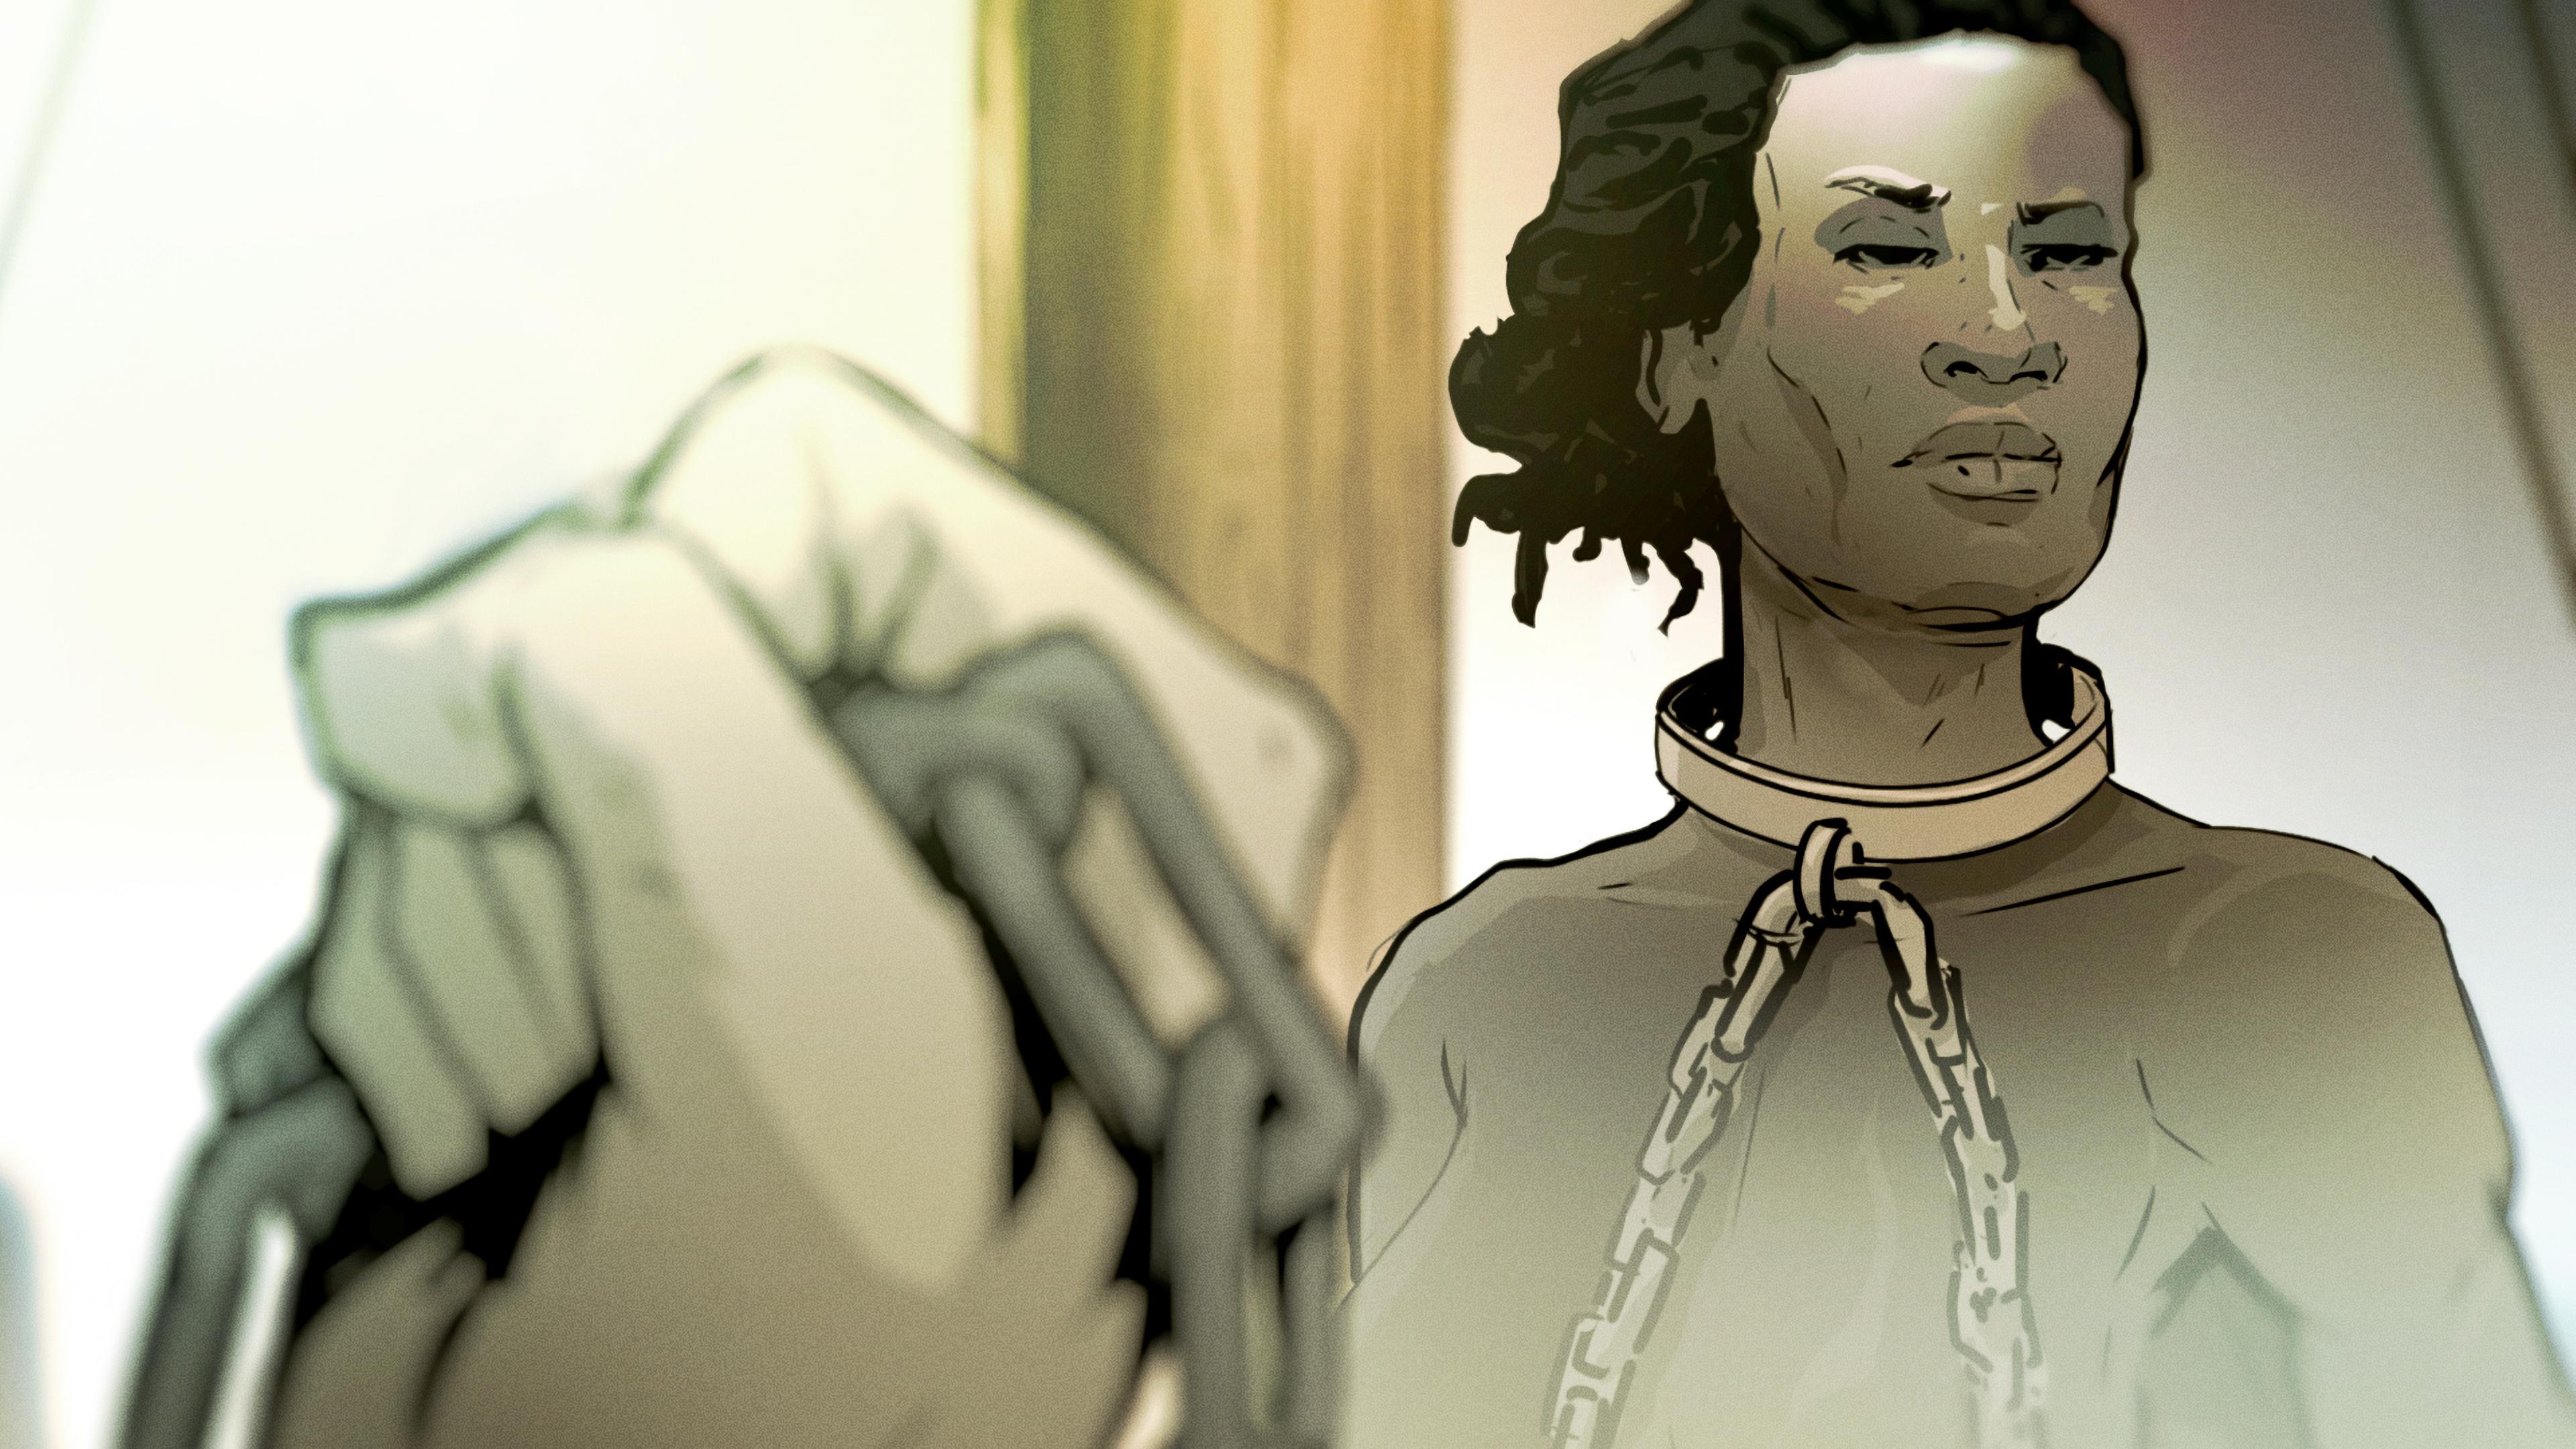 Graphic-Novel-Darstellung: Eine schwarze Frau hat eine Fessel um den Hals. Sie sieht zur Seite. Die Fessel wird von einer weißen, bedrohlich wirkenden Faust gehalten.